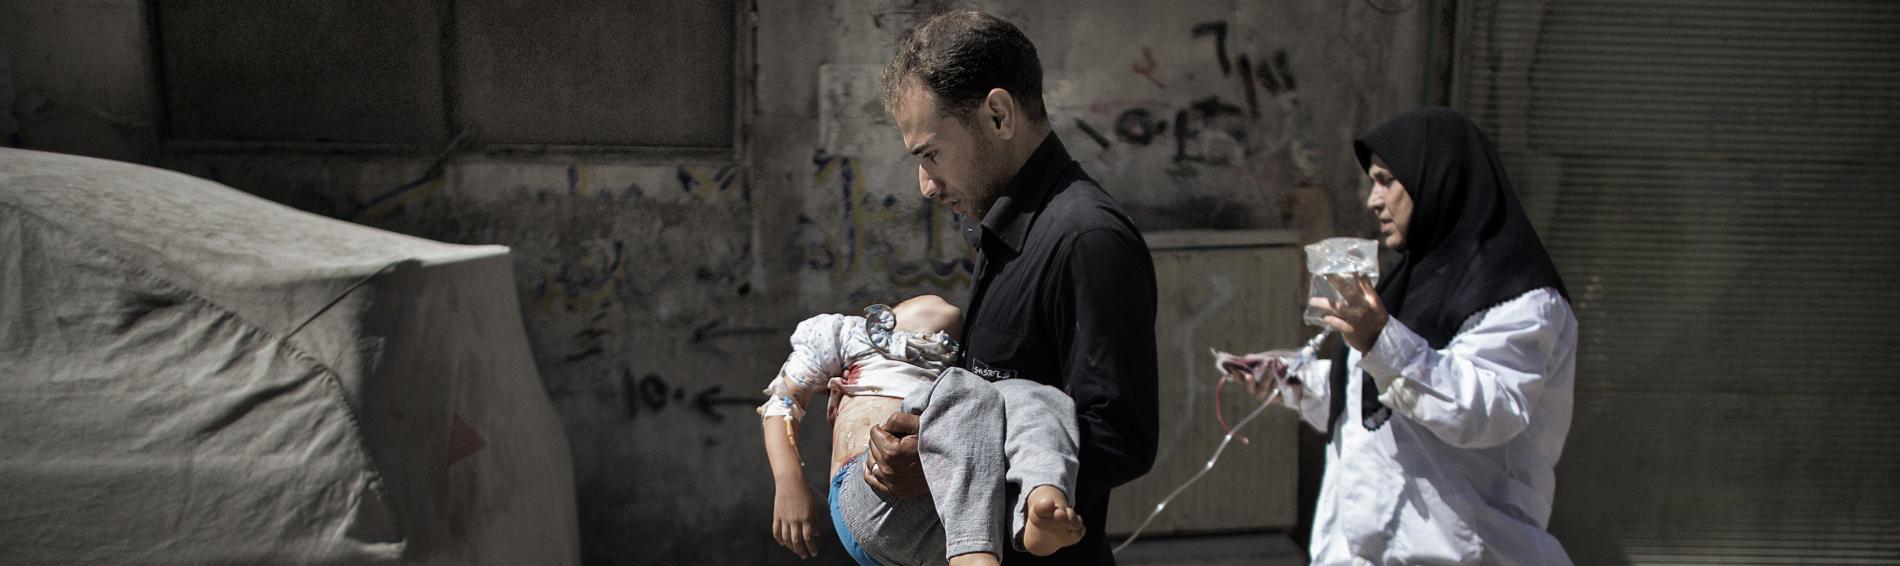 Een Syrische vader draagt zijn kind in de armen door straten die in puin liggen. Achter hen loopt een vrouw met hoofddoek hen op de voet met een bakster die aan het kind is bevestigd.